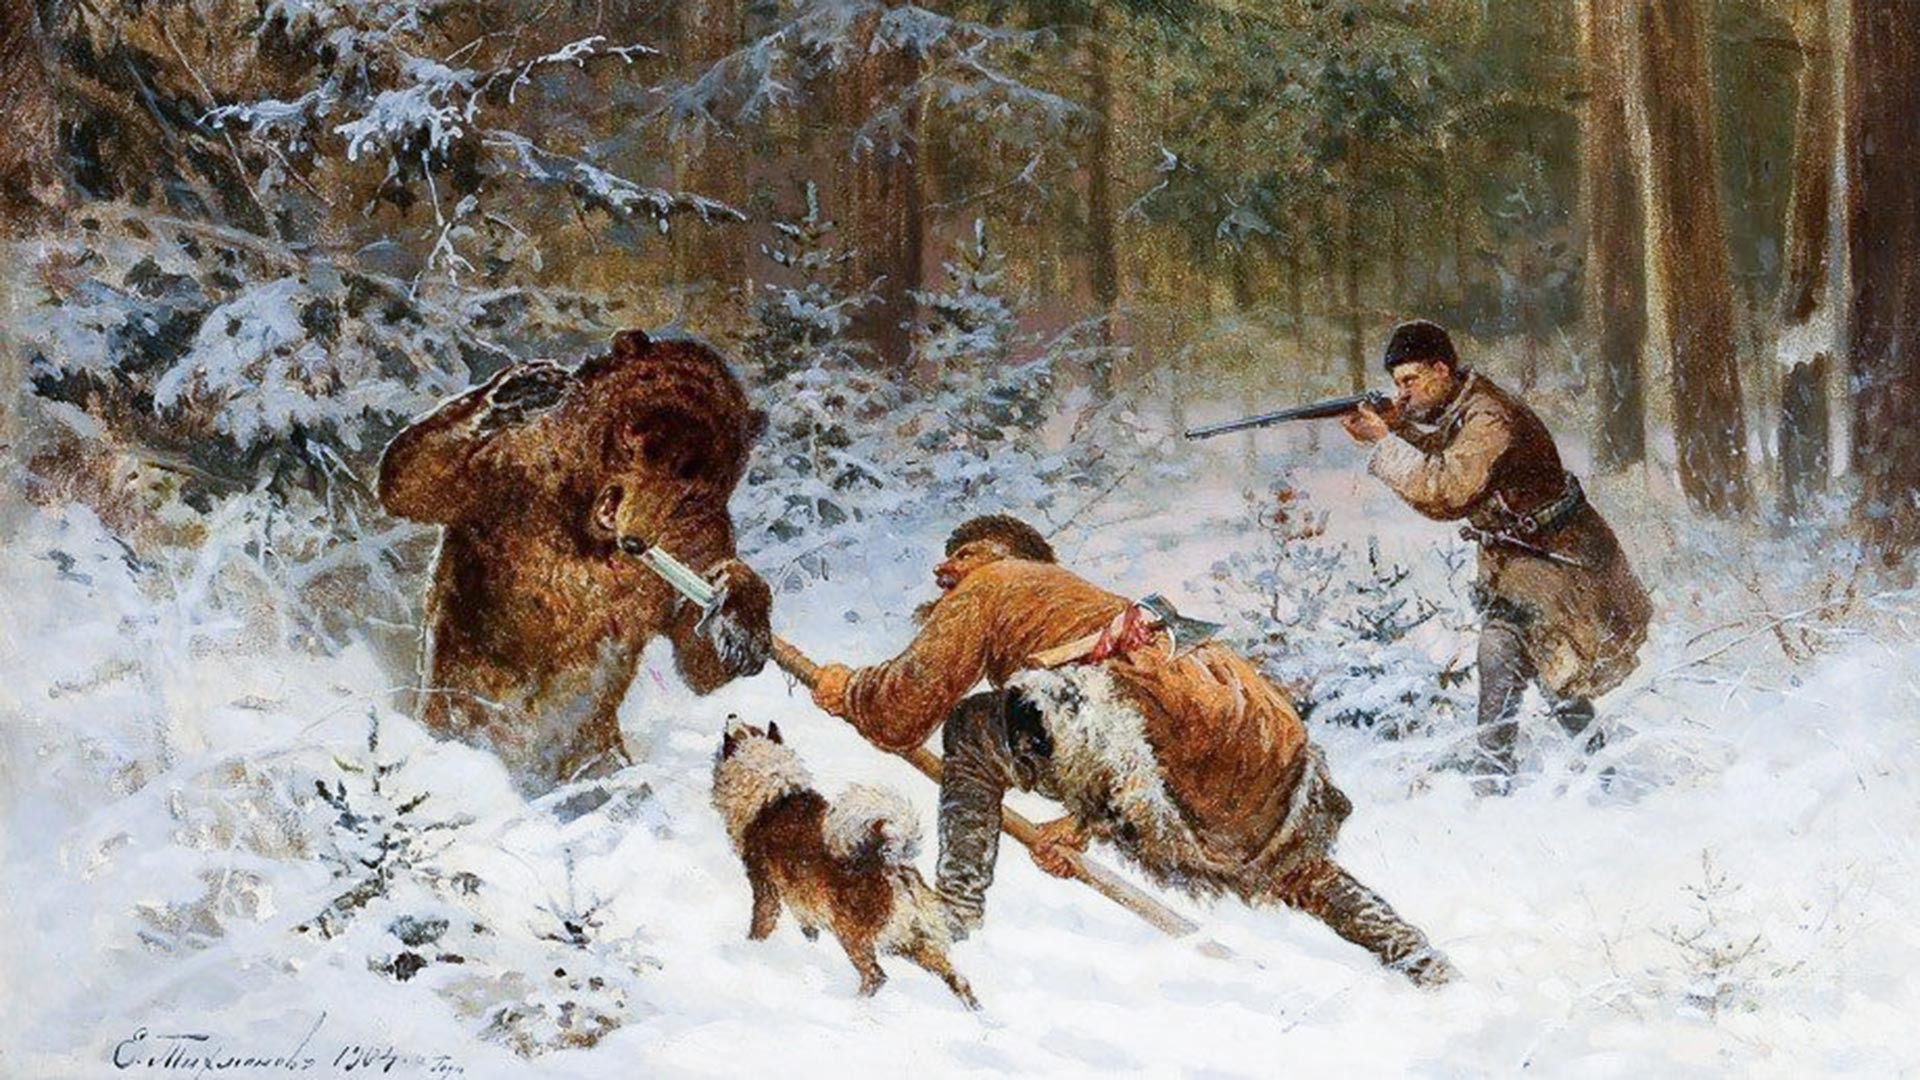 La caccia all'orso in Russia: come è cambiata nel corso dei secoli - Russia  Beyond - Italia